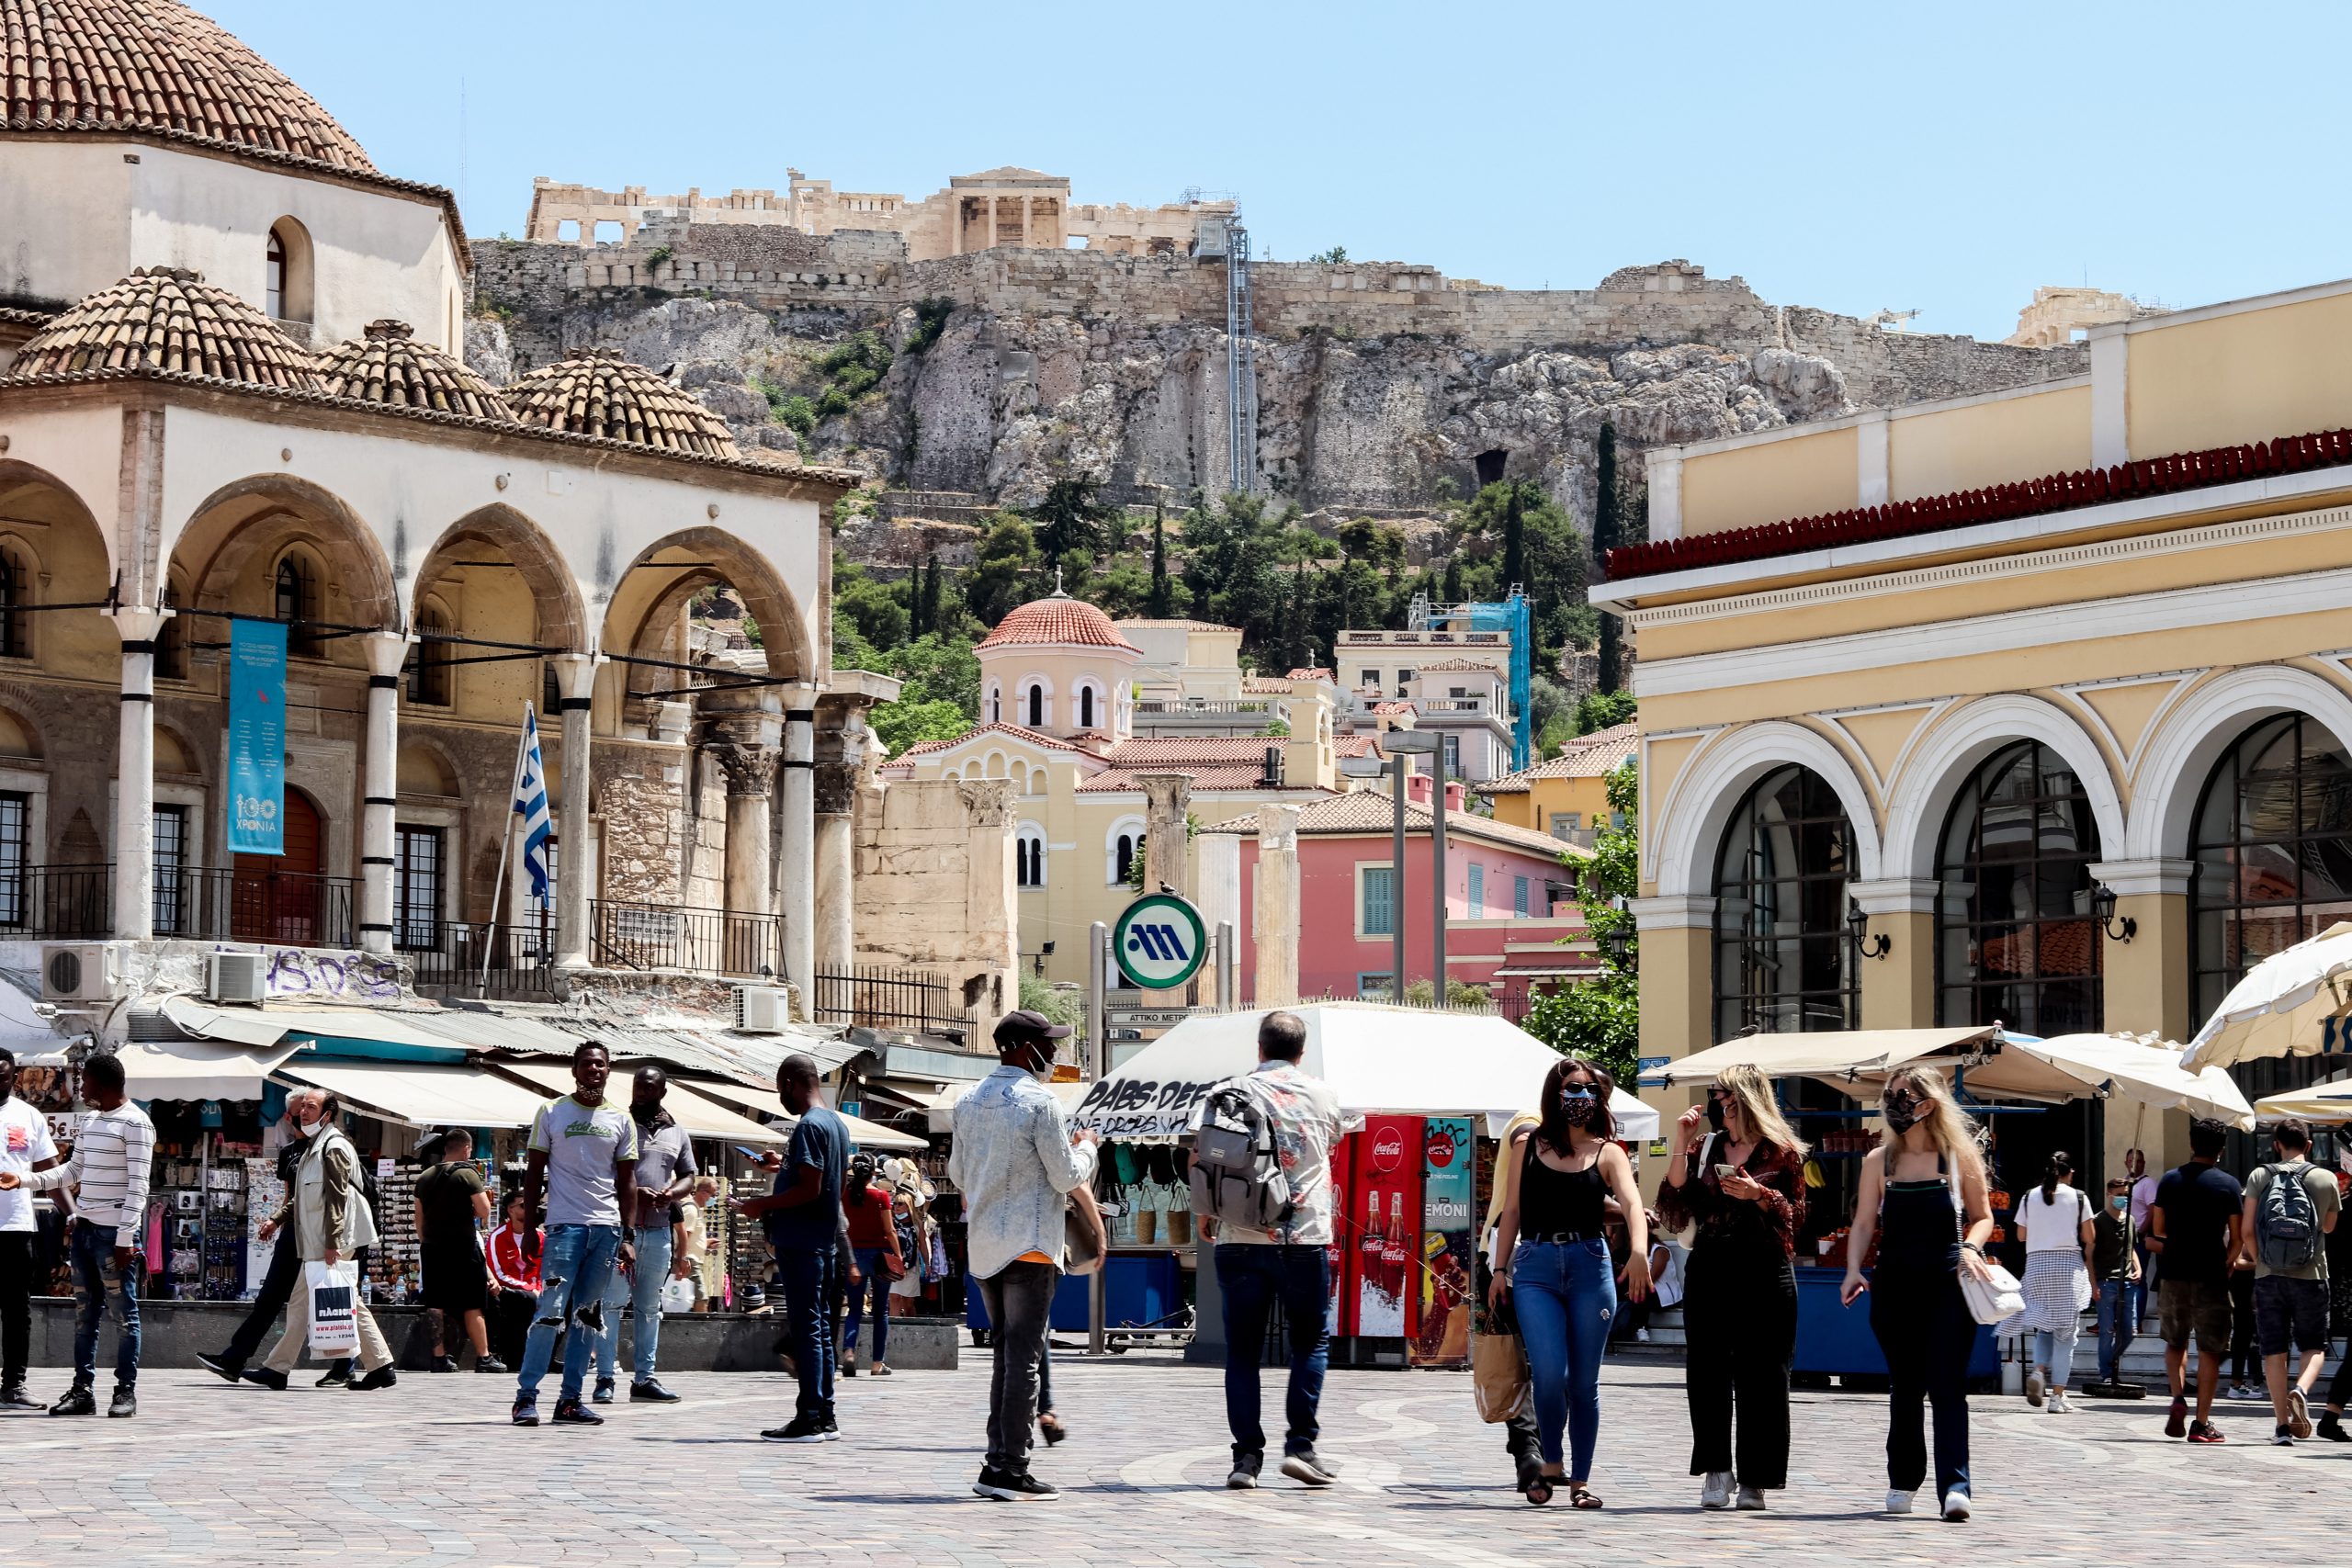 Ευρωβαρόμετρο: 1 στους 2 Έλληνες περιμένει χειροτέρευση της οικονομικής κατάστασης